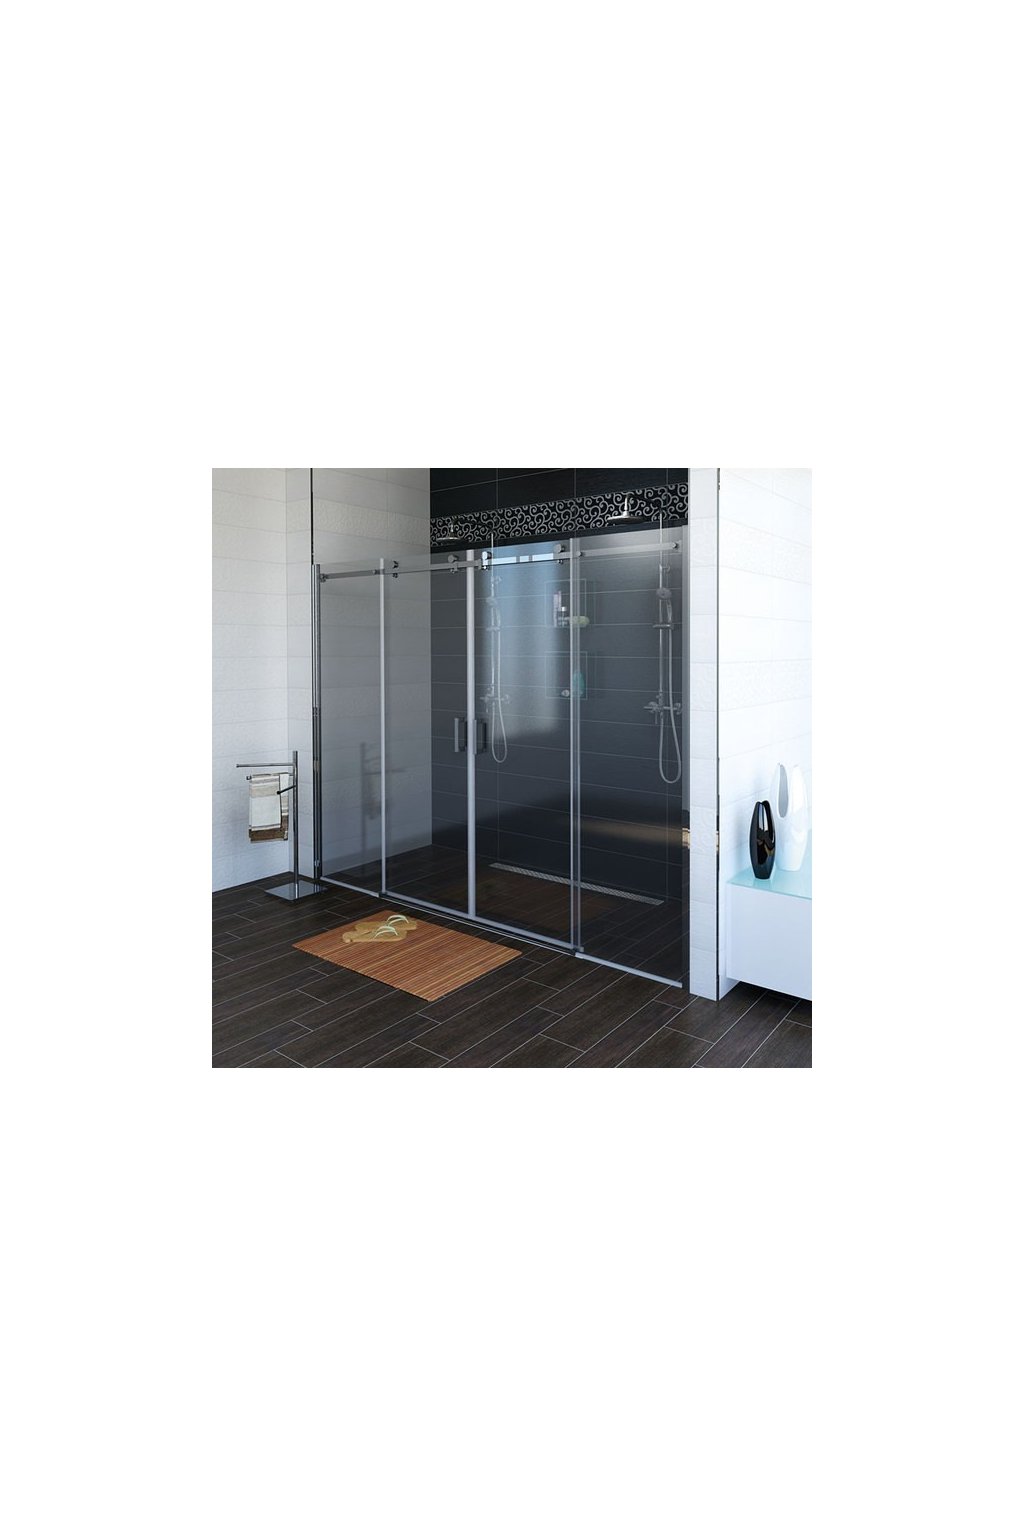 GELCO - DRAGON sprchové dveře 1700mm, čiré sklo, GD4870  + doprava zdarma + při platbě převodem sleva